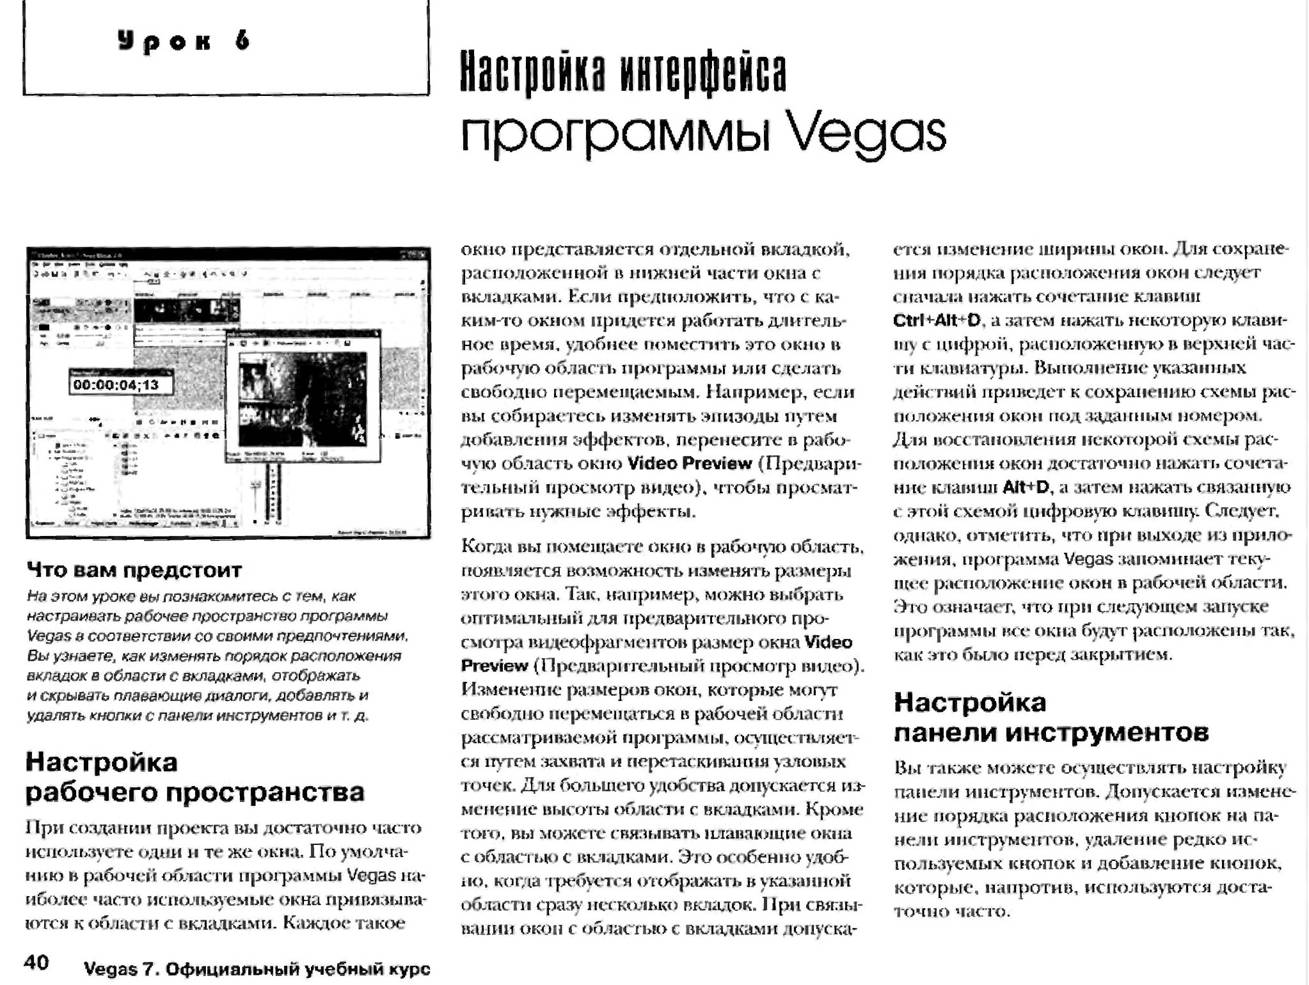 http://redaktori-uroki.3dn.ru/_ph/13/766579682.jpg